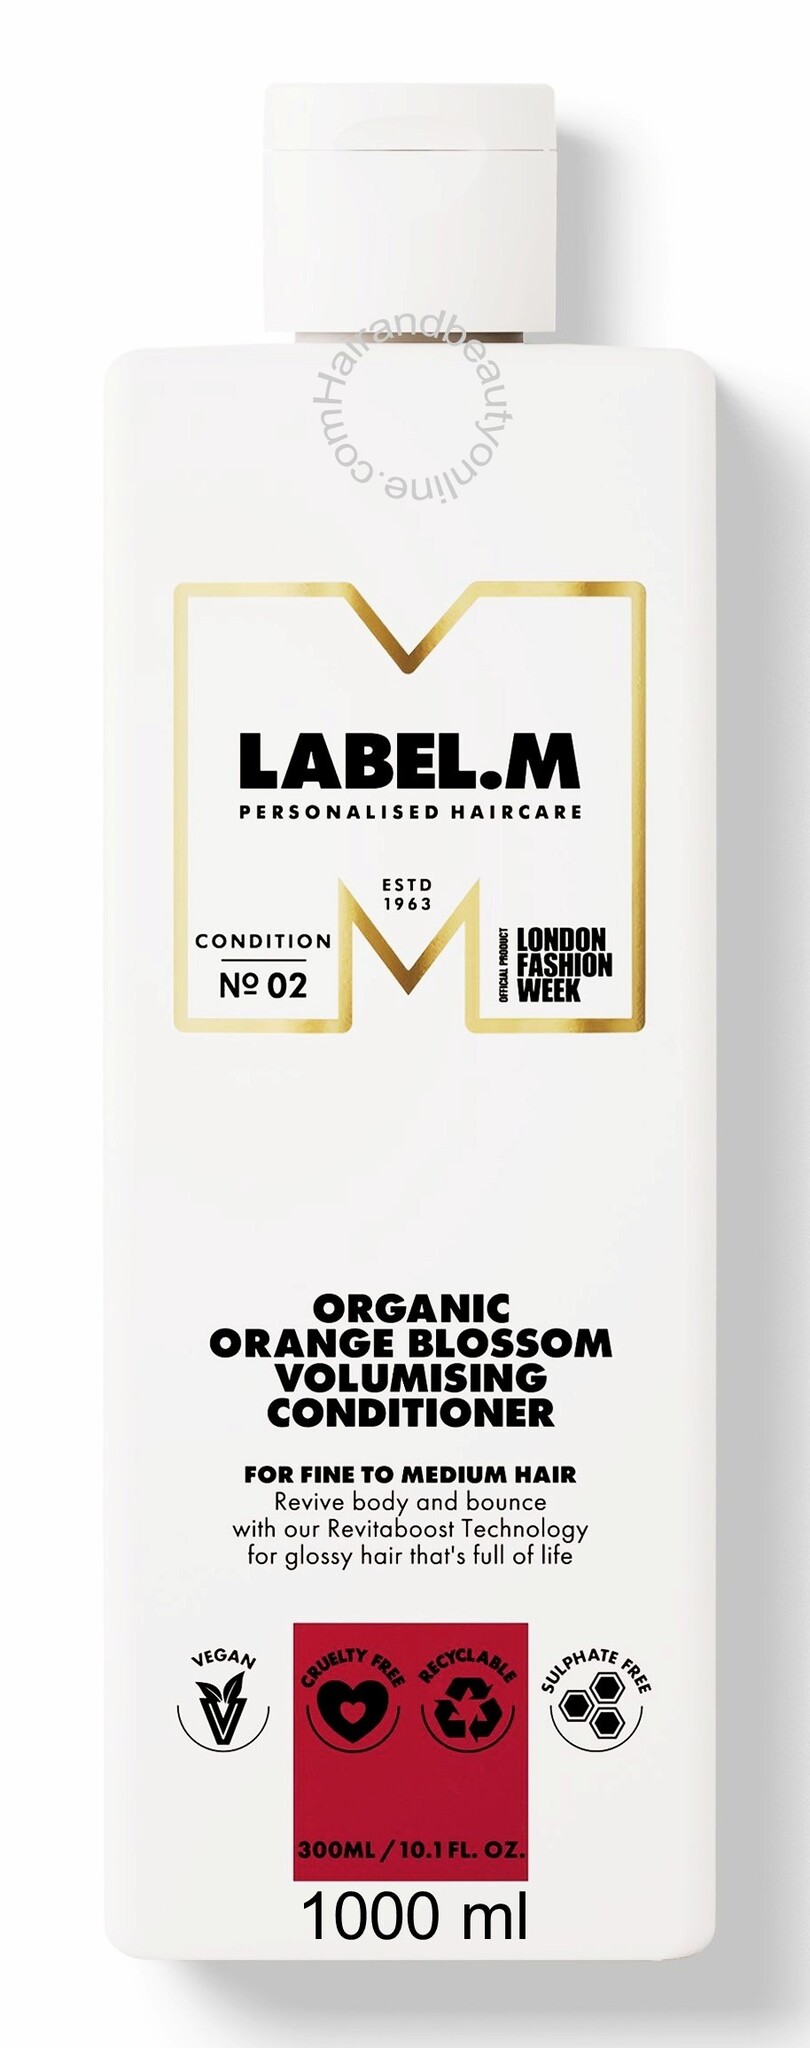 Label.m Organic Orange Blossom Volumising Conditioner 1000ml